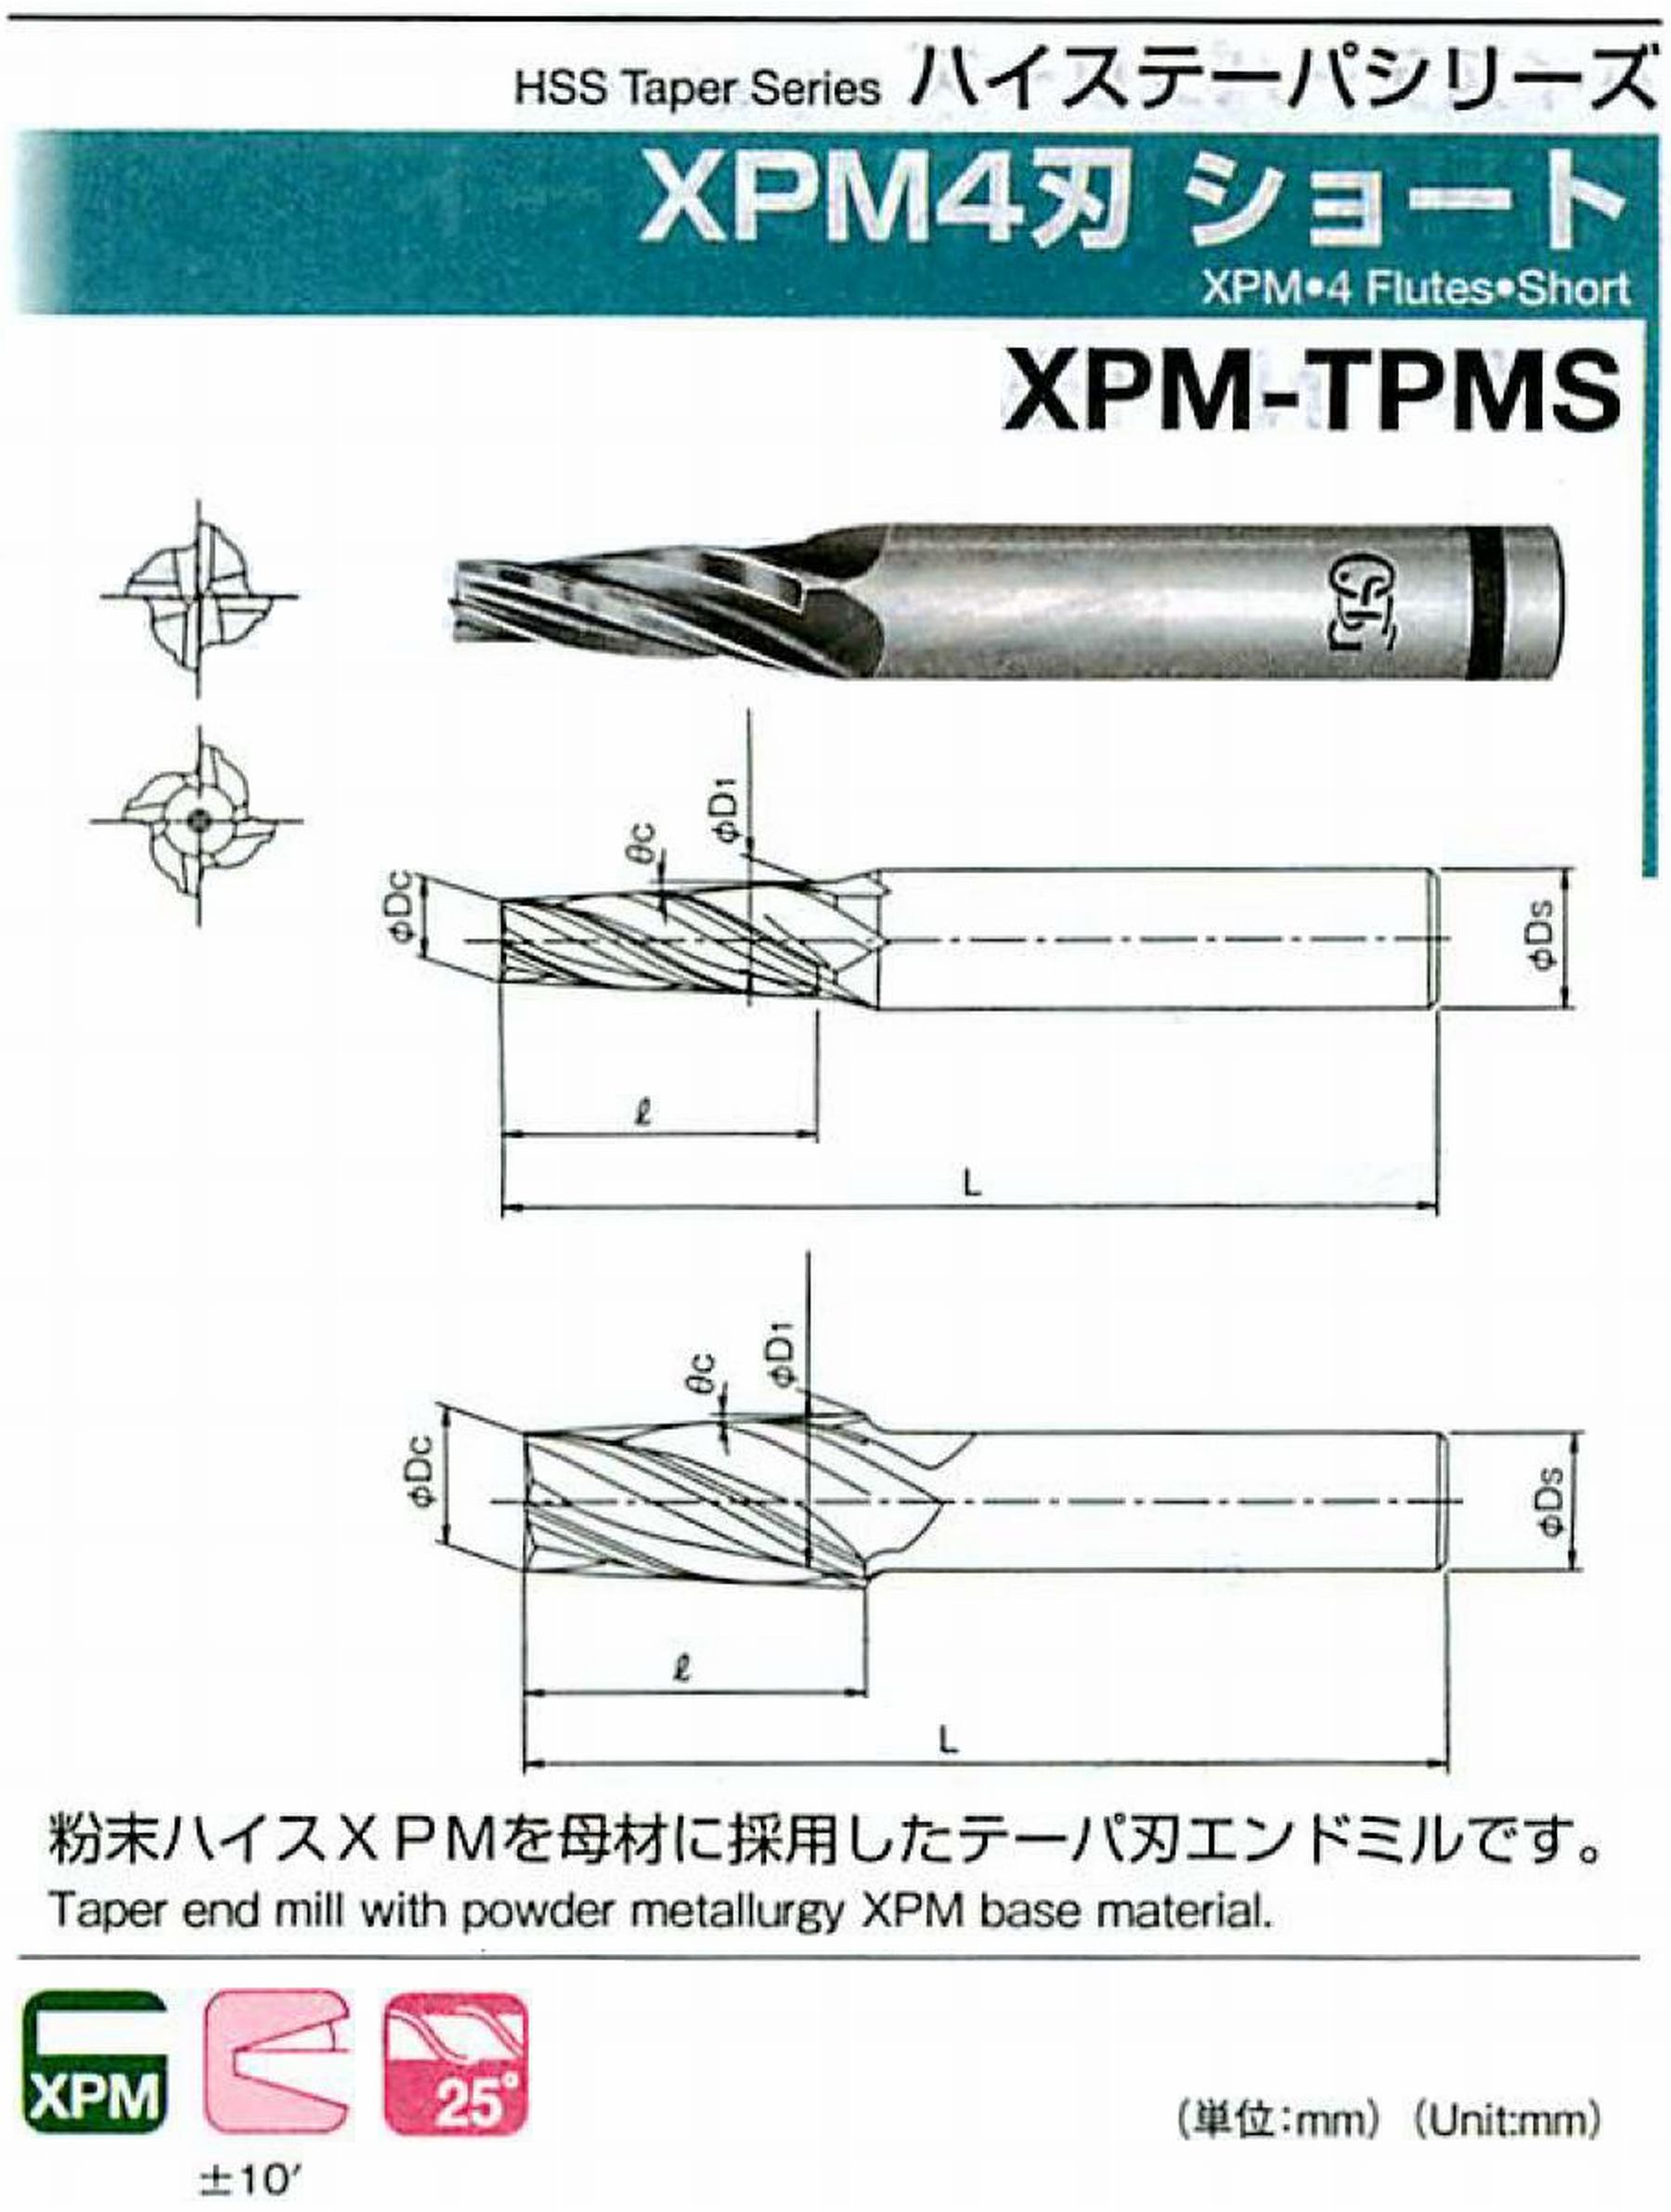 オーエスジー/OSG XPM4刃 ショート XPM-TPMS 外径×刃部テーパ半角3×2°全長62 刃長18 シャンク径6mm 大端径4.26